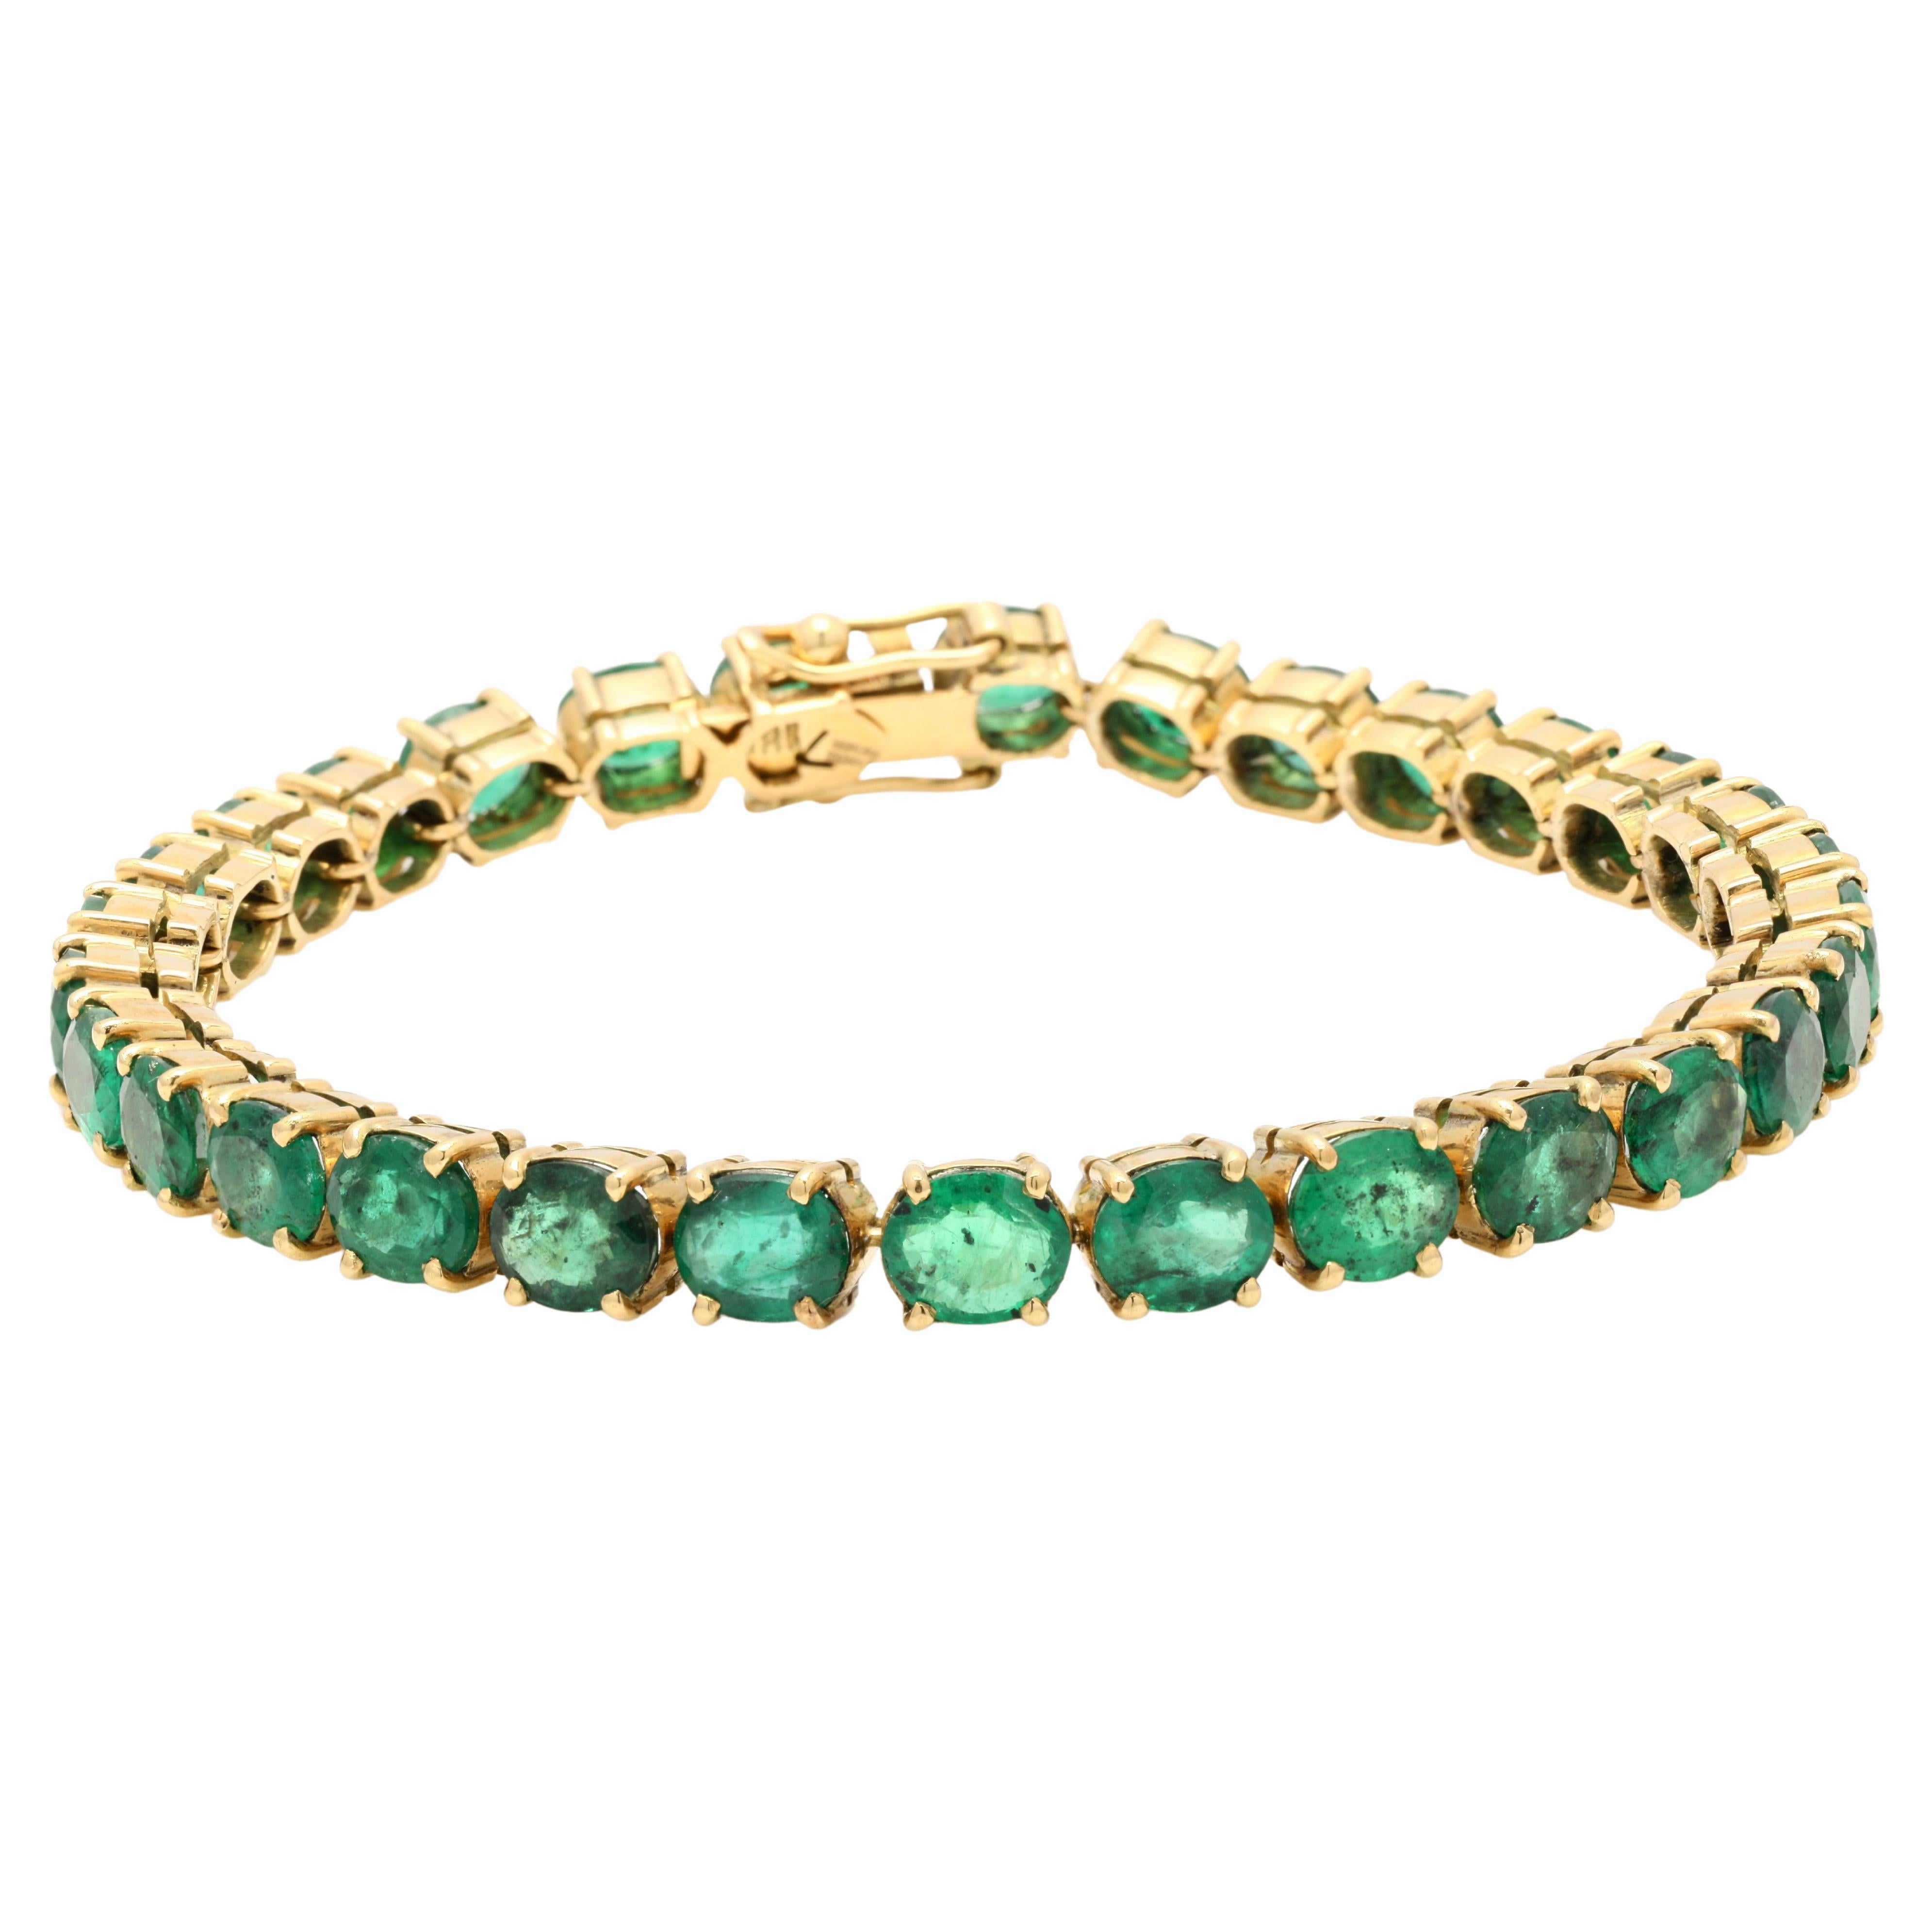 24,5ct Oval Grüner Smaragd Edelstein Armband eingelegt in 14K Gelbgold Einstellungen